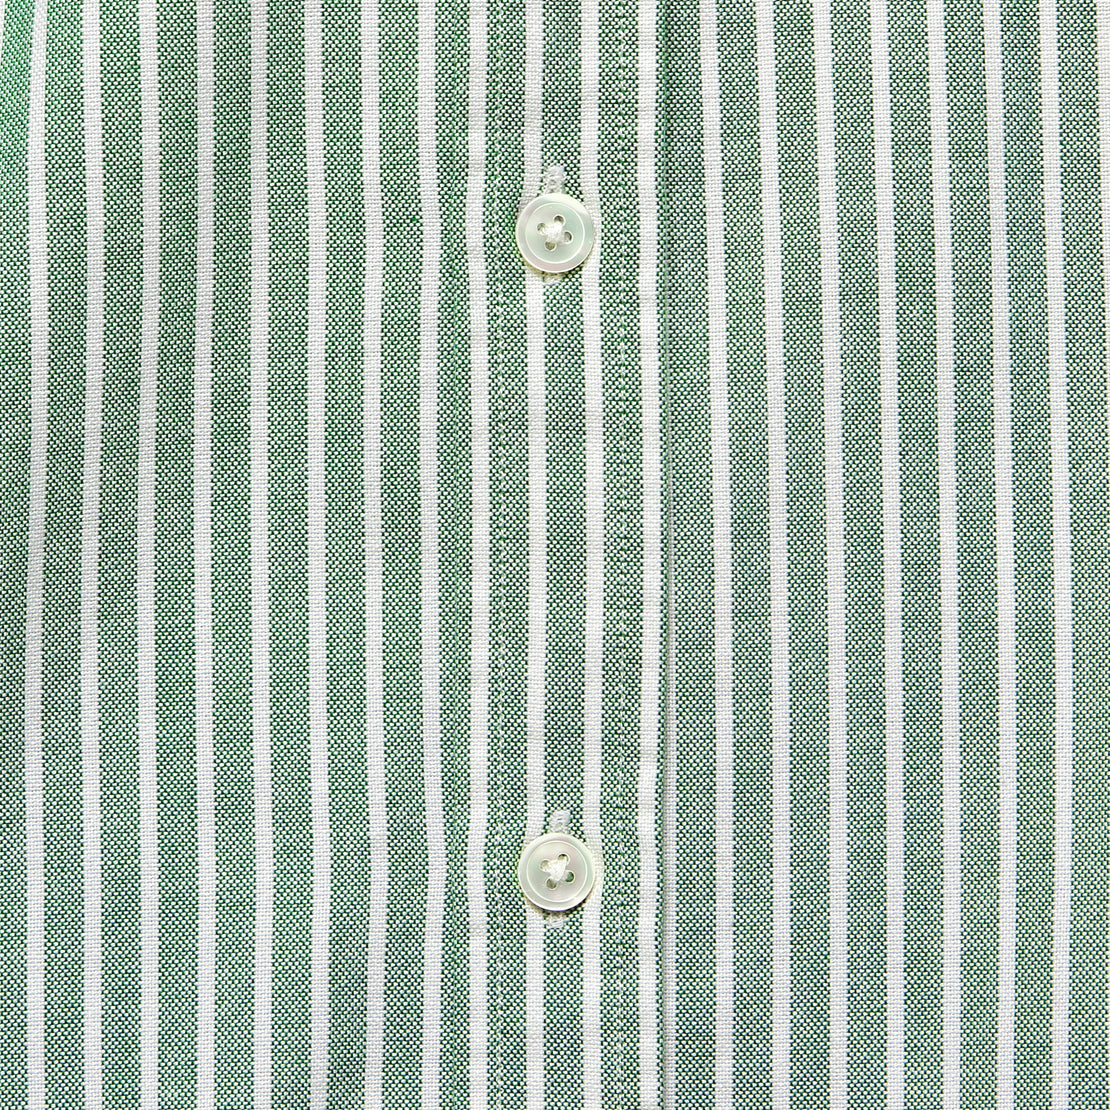 Belavista Oxford Shirt - Green Stripe - Portuguese Flannel - STAG Provisions - Tops - L/S Woven - Stripe